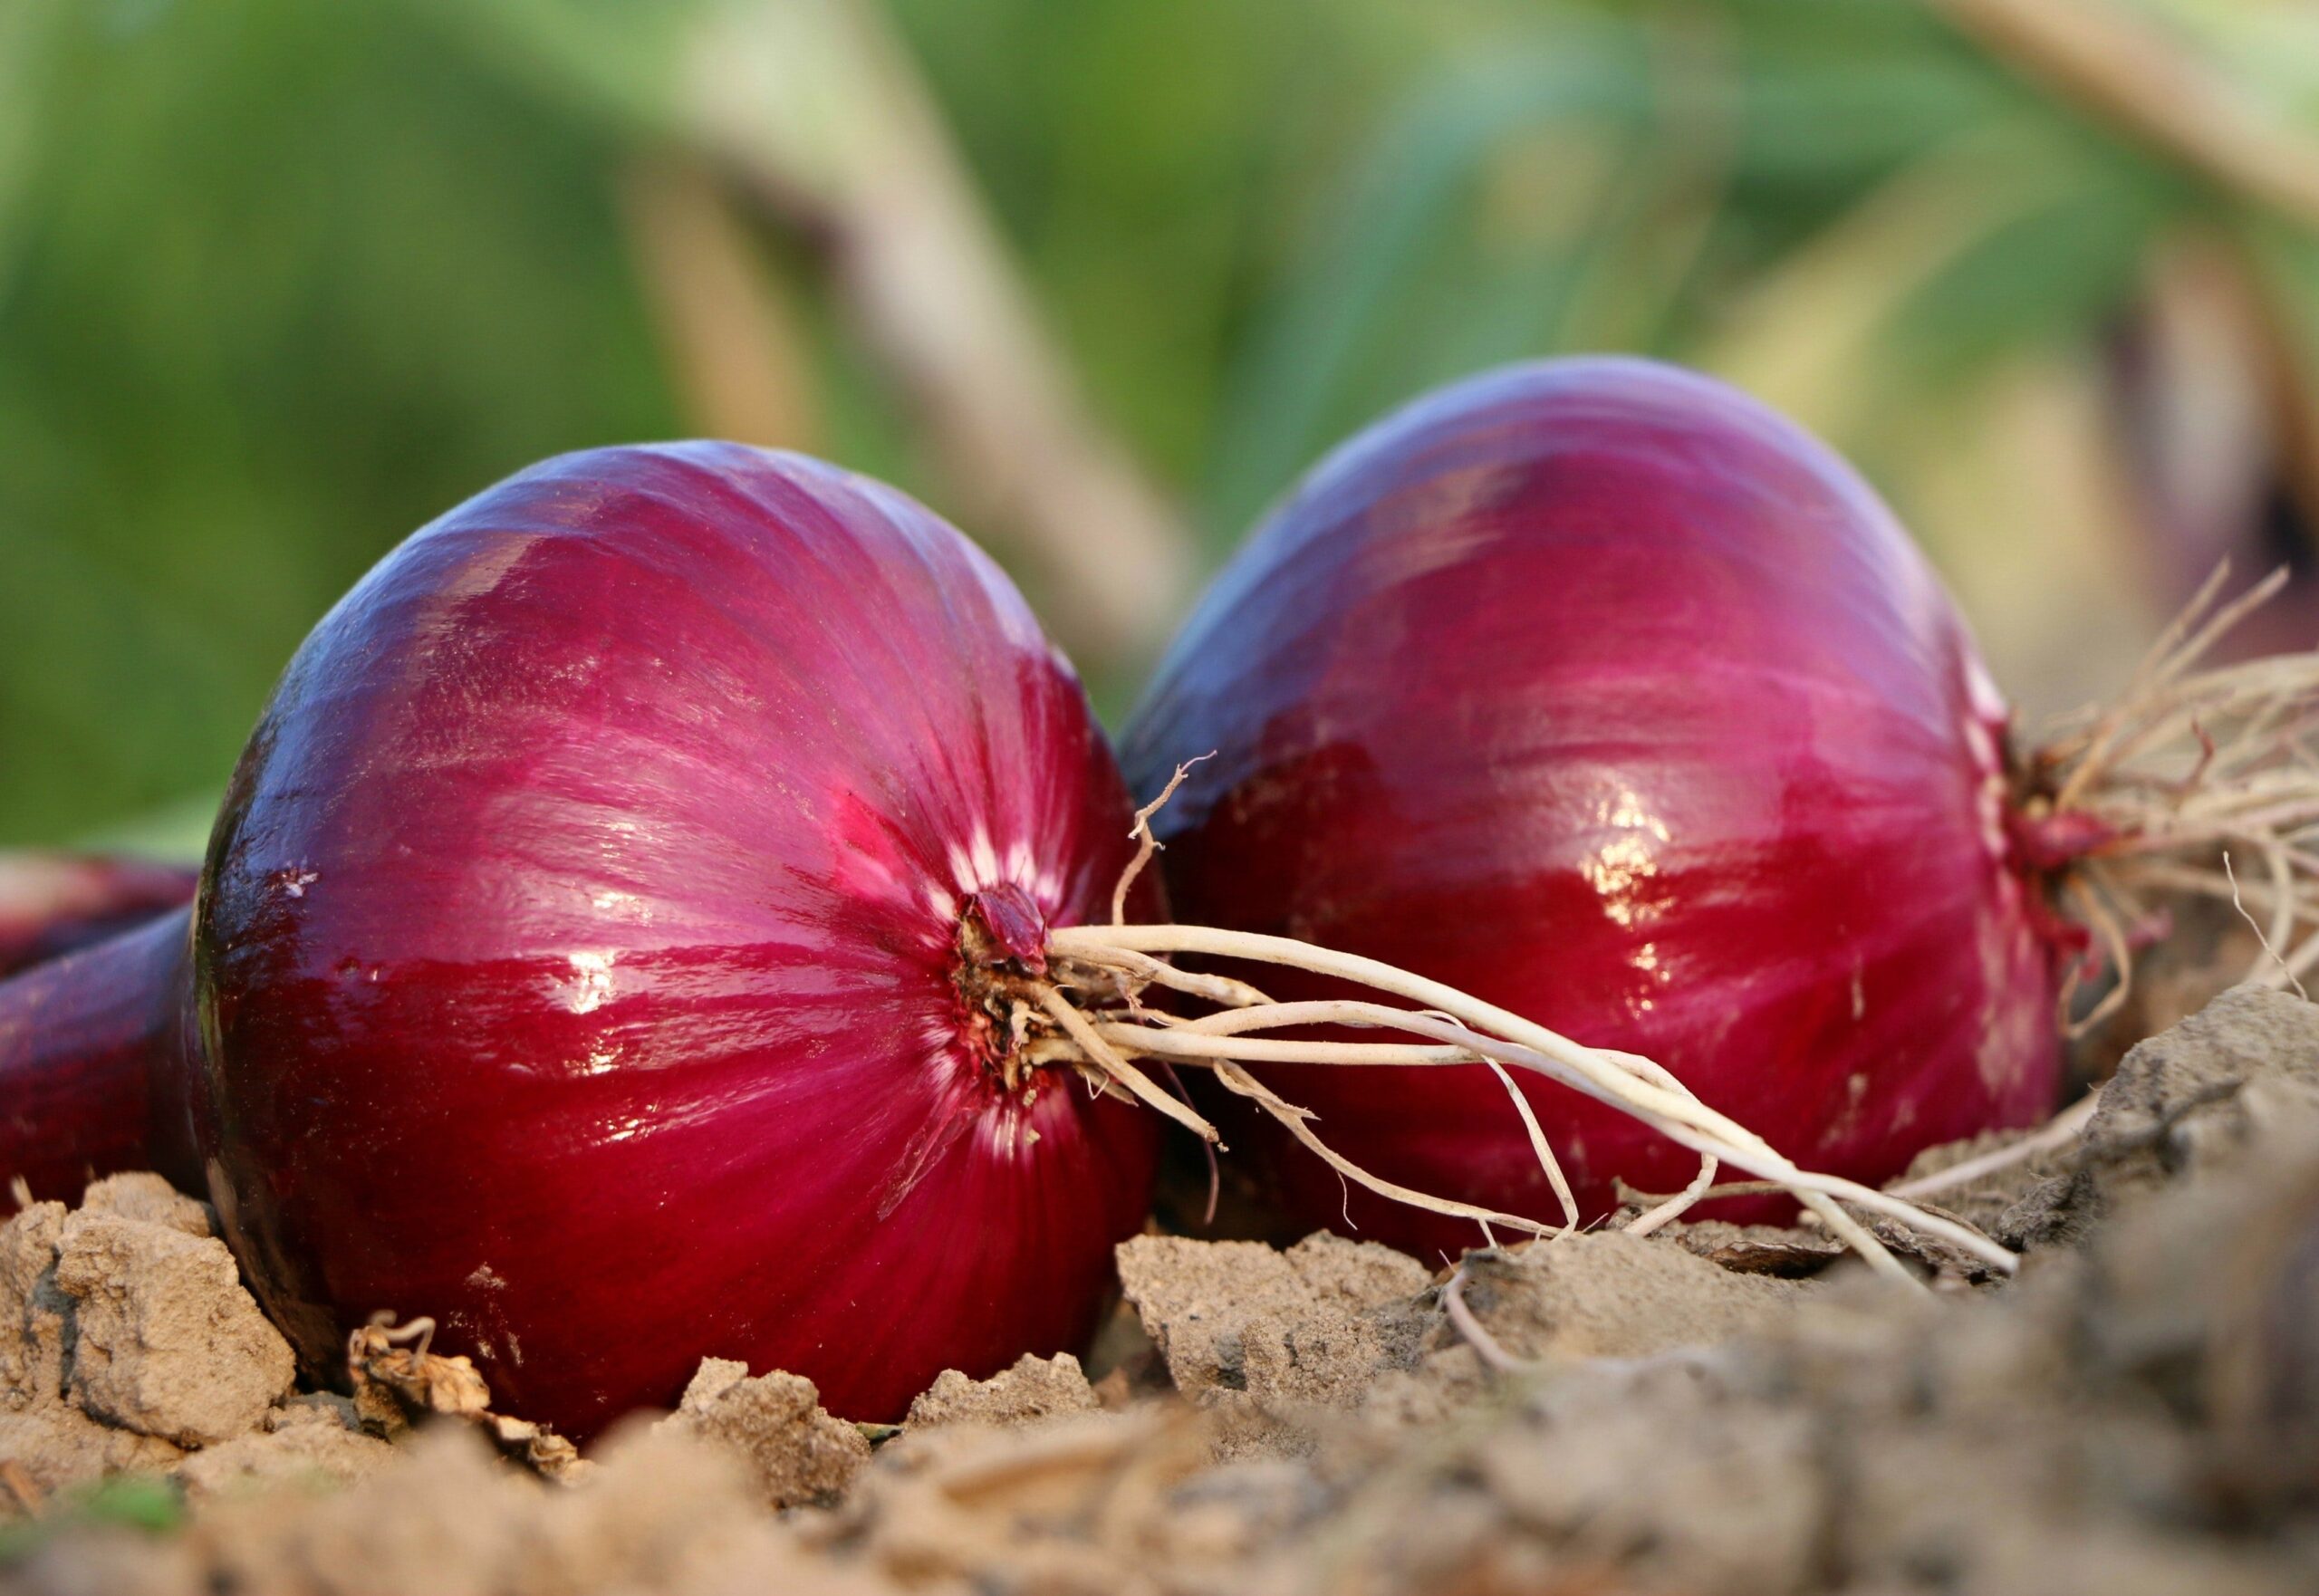 Varieties of Onion Crop Grown in India 